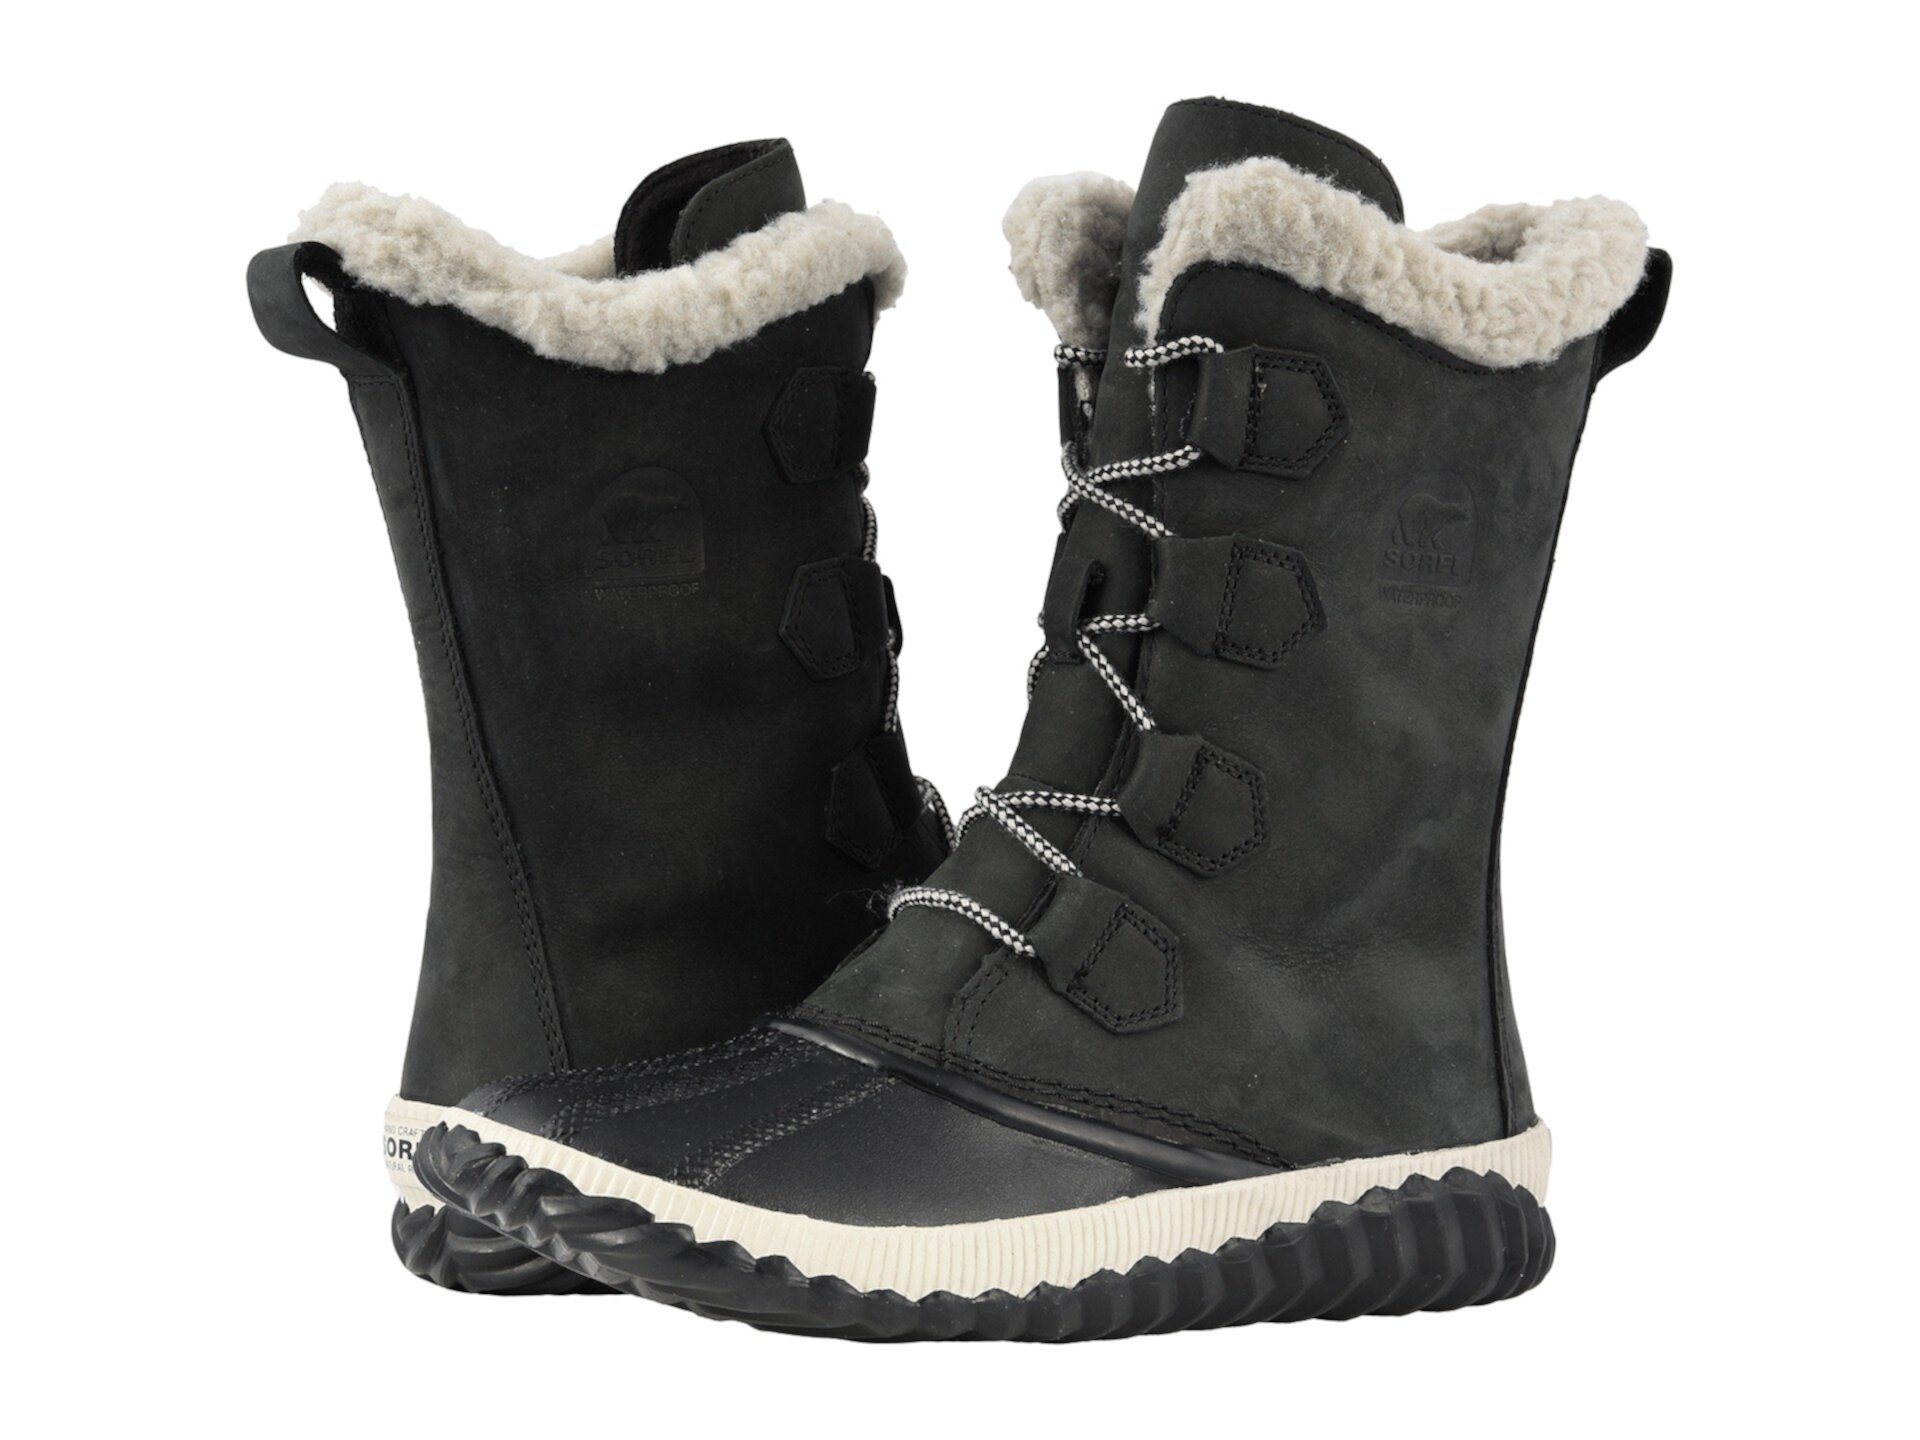 Sorel Sorel Explorer™ высокие черные. Sorel cozy 1964. Сорель одежда. Sorel обувь женская зимняя купить. Boot out